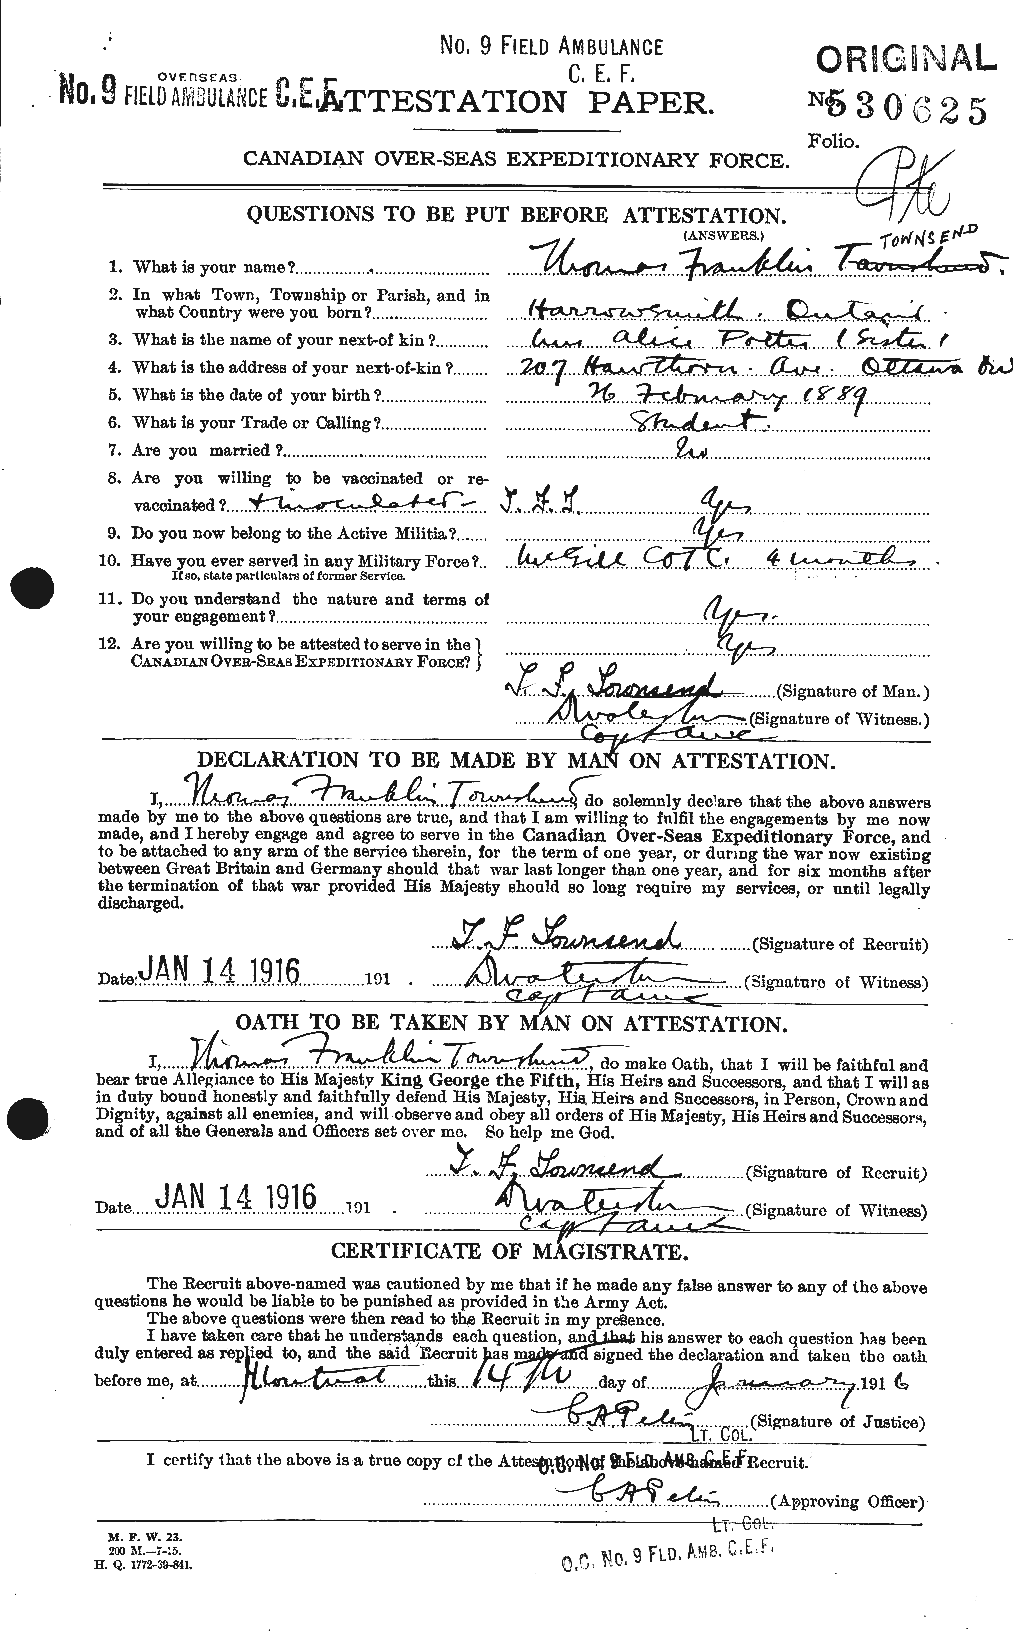 Dossiers du Personnel de la Première Guerre mondiale - CEC 637224a